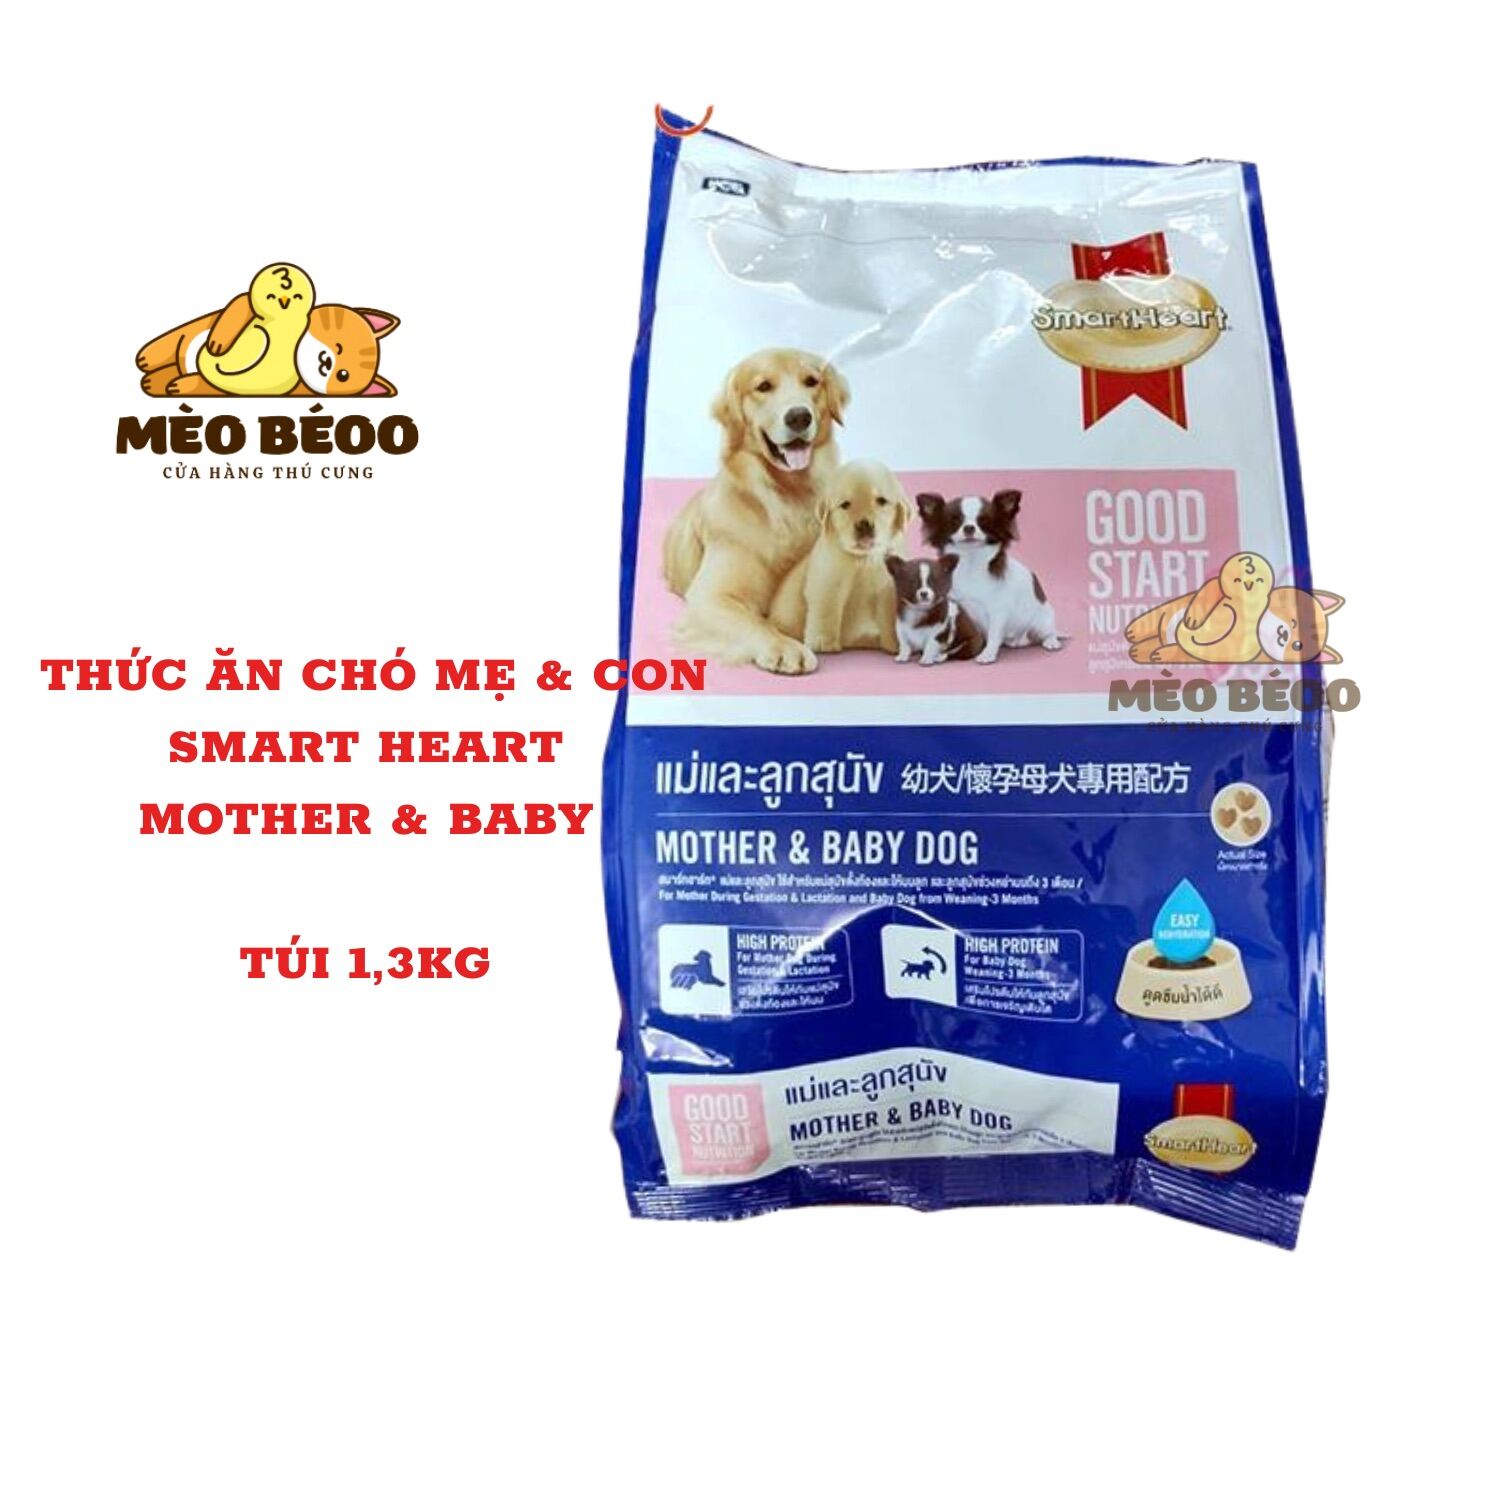 Thức ăn cho chó mẹ và chó con SmartHeart Mother & Baby Dog gói 1,3kg